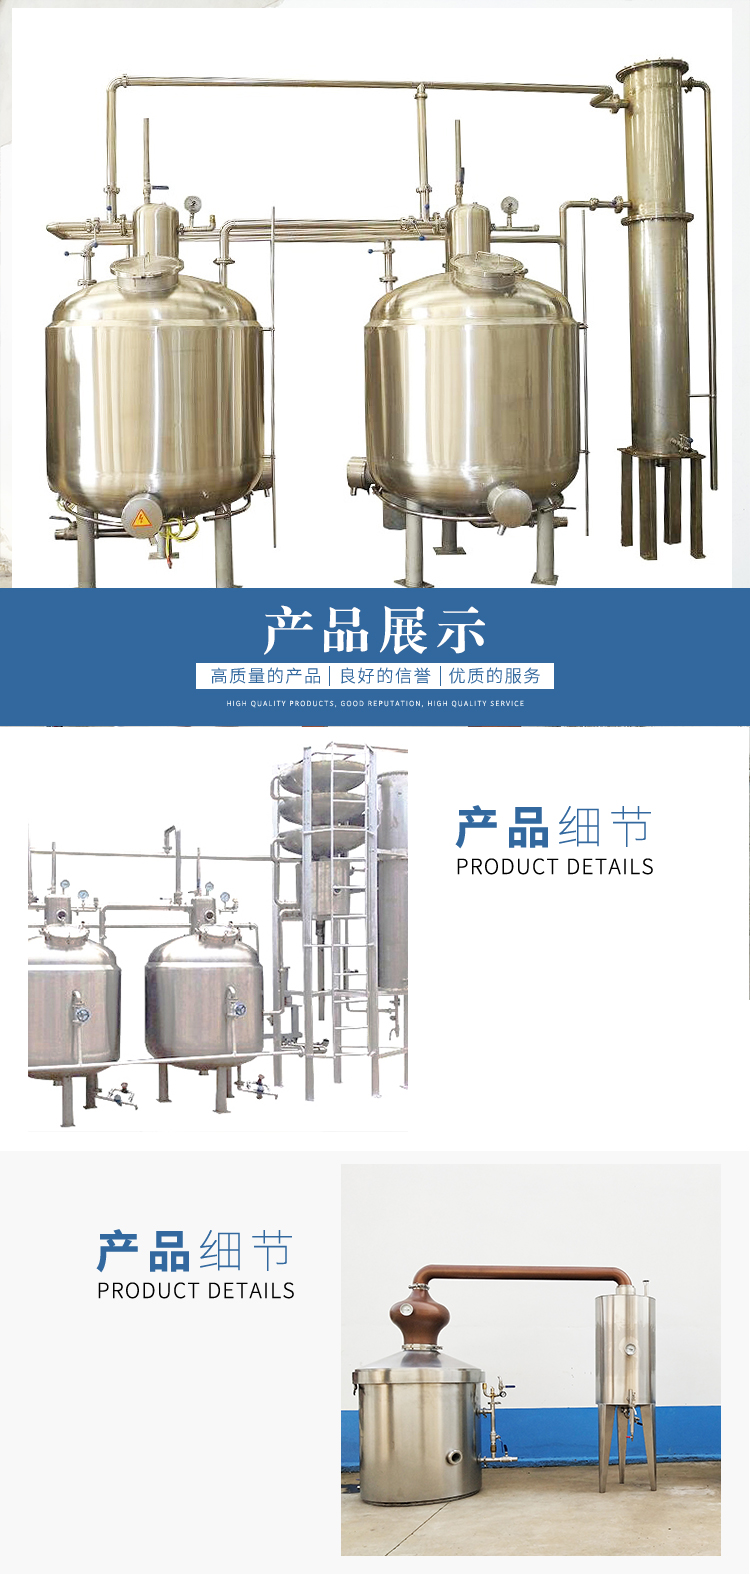 夏朗德蒸馏设备的供应商 夏朗德蒸馏设备的特点